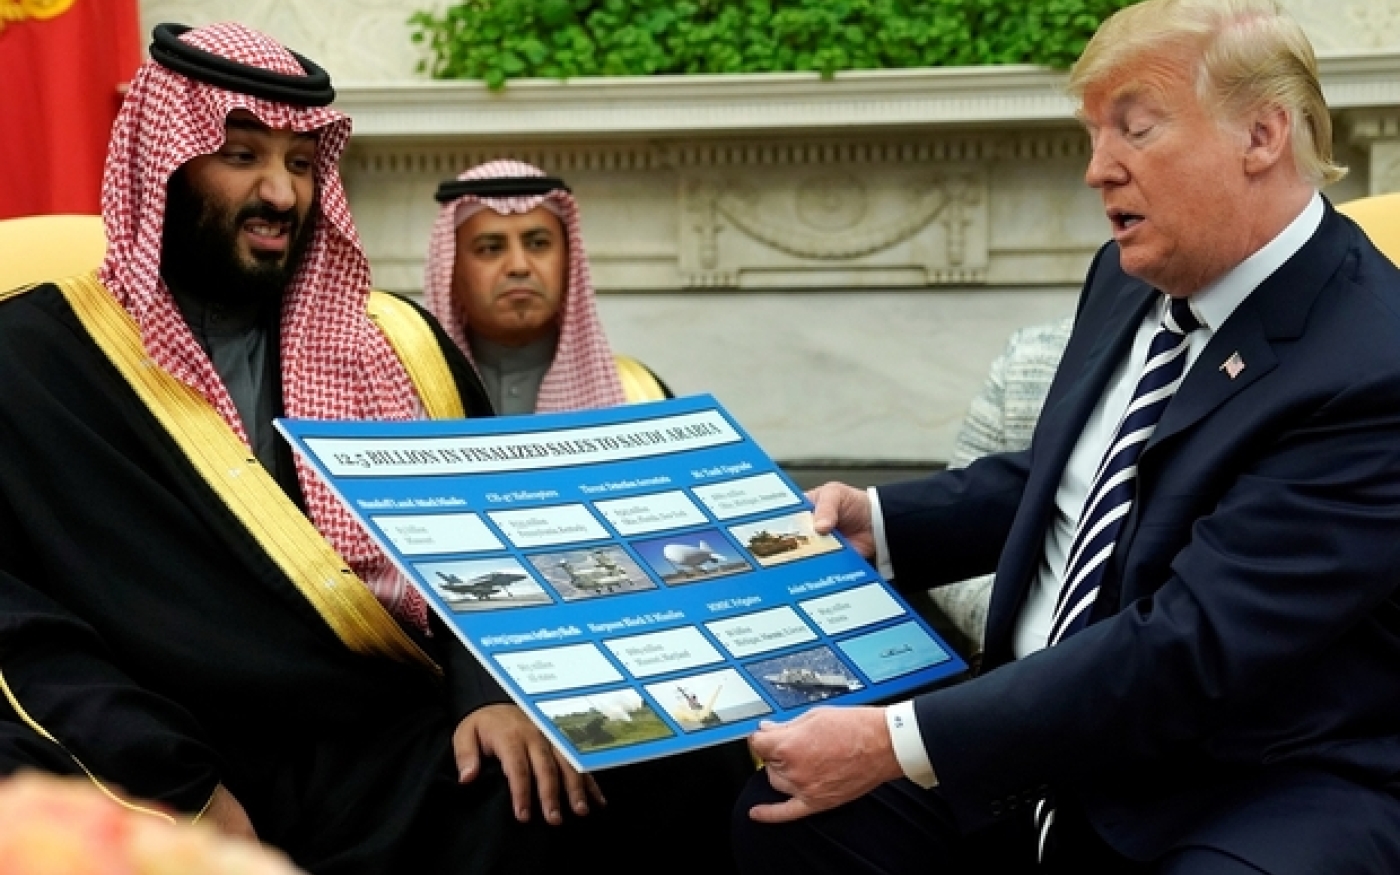 Trump tient un schéma de ventes d’armes tandis qu’il accueille Mohammed ben Salmane dans le Bureau ovale en mars 2018 (Reuters)